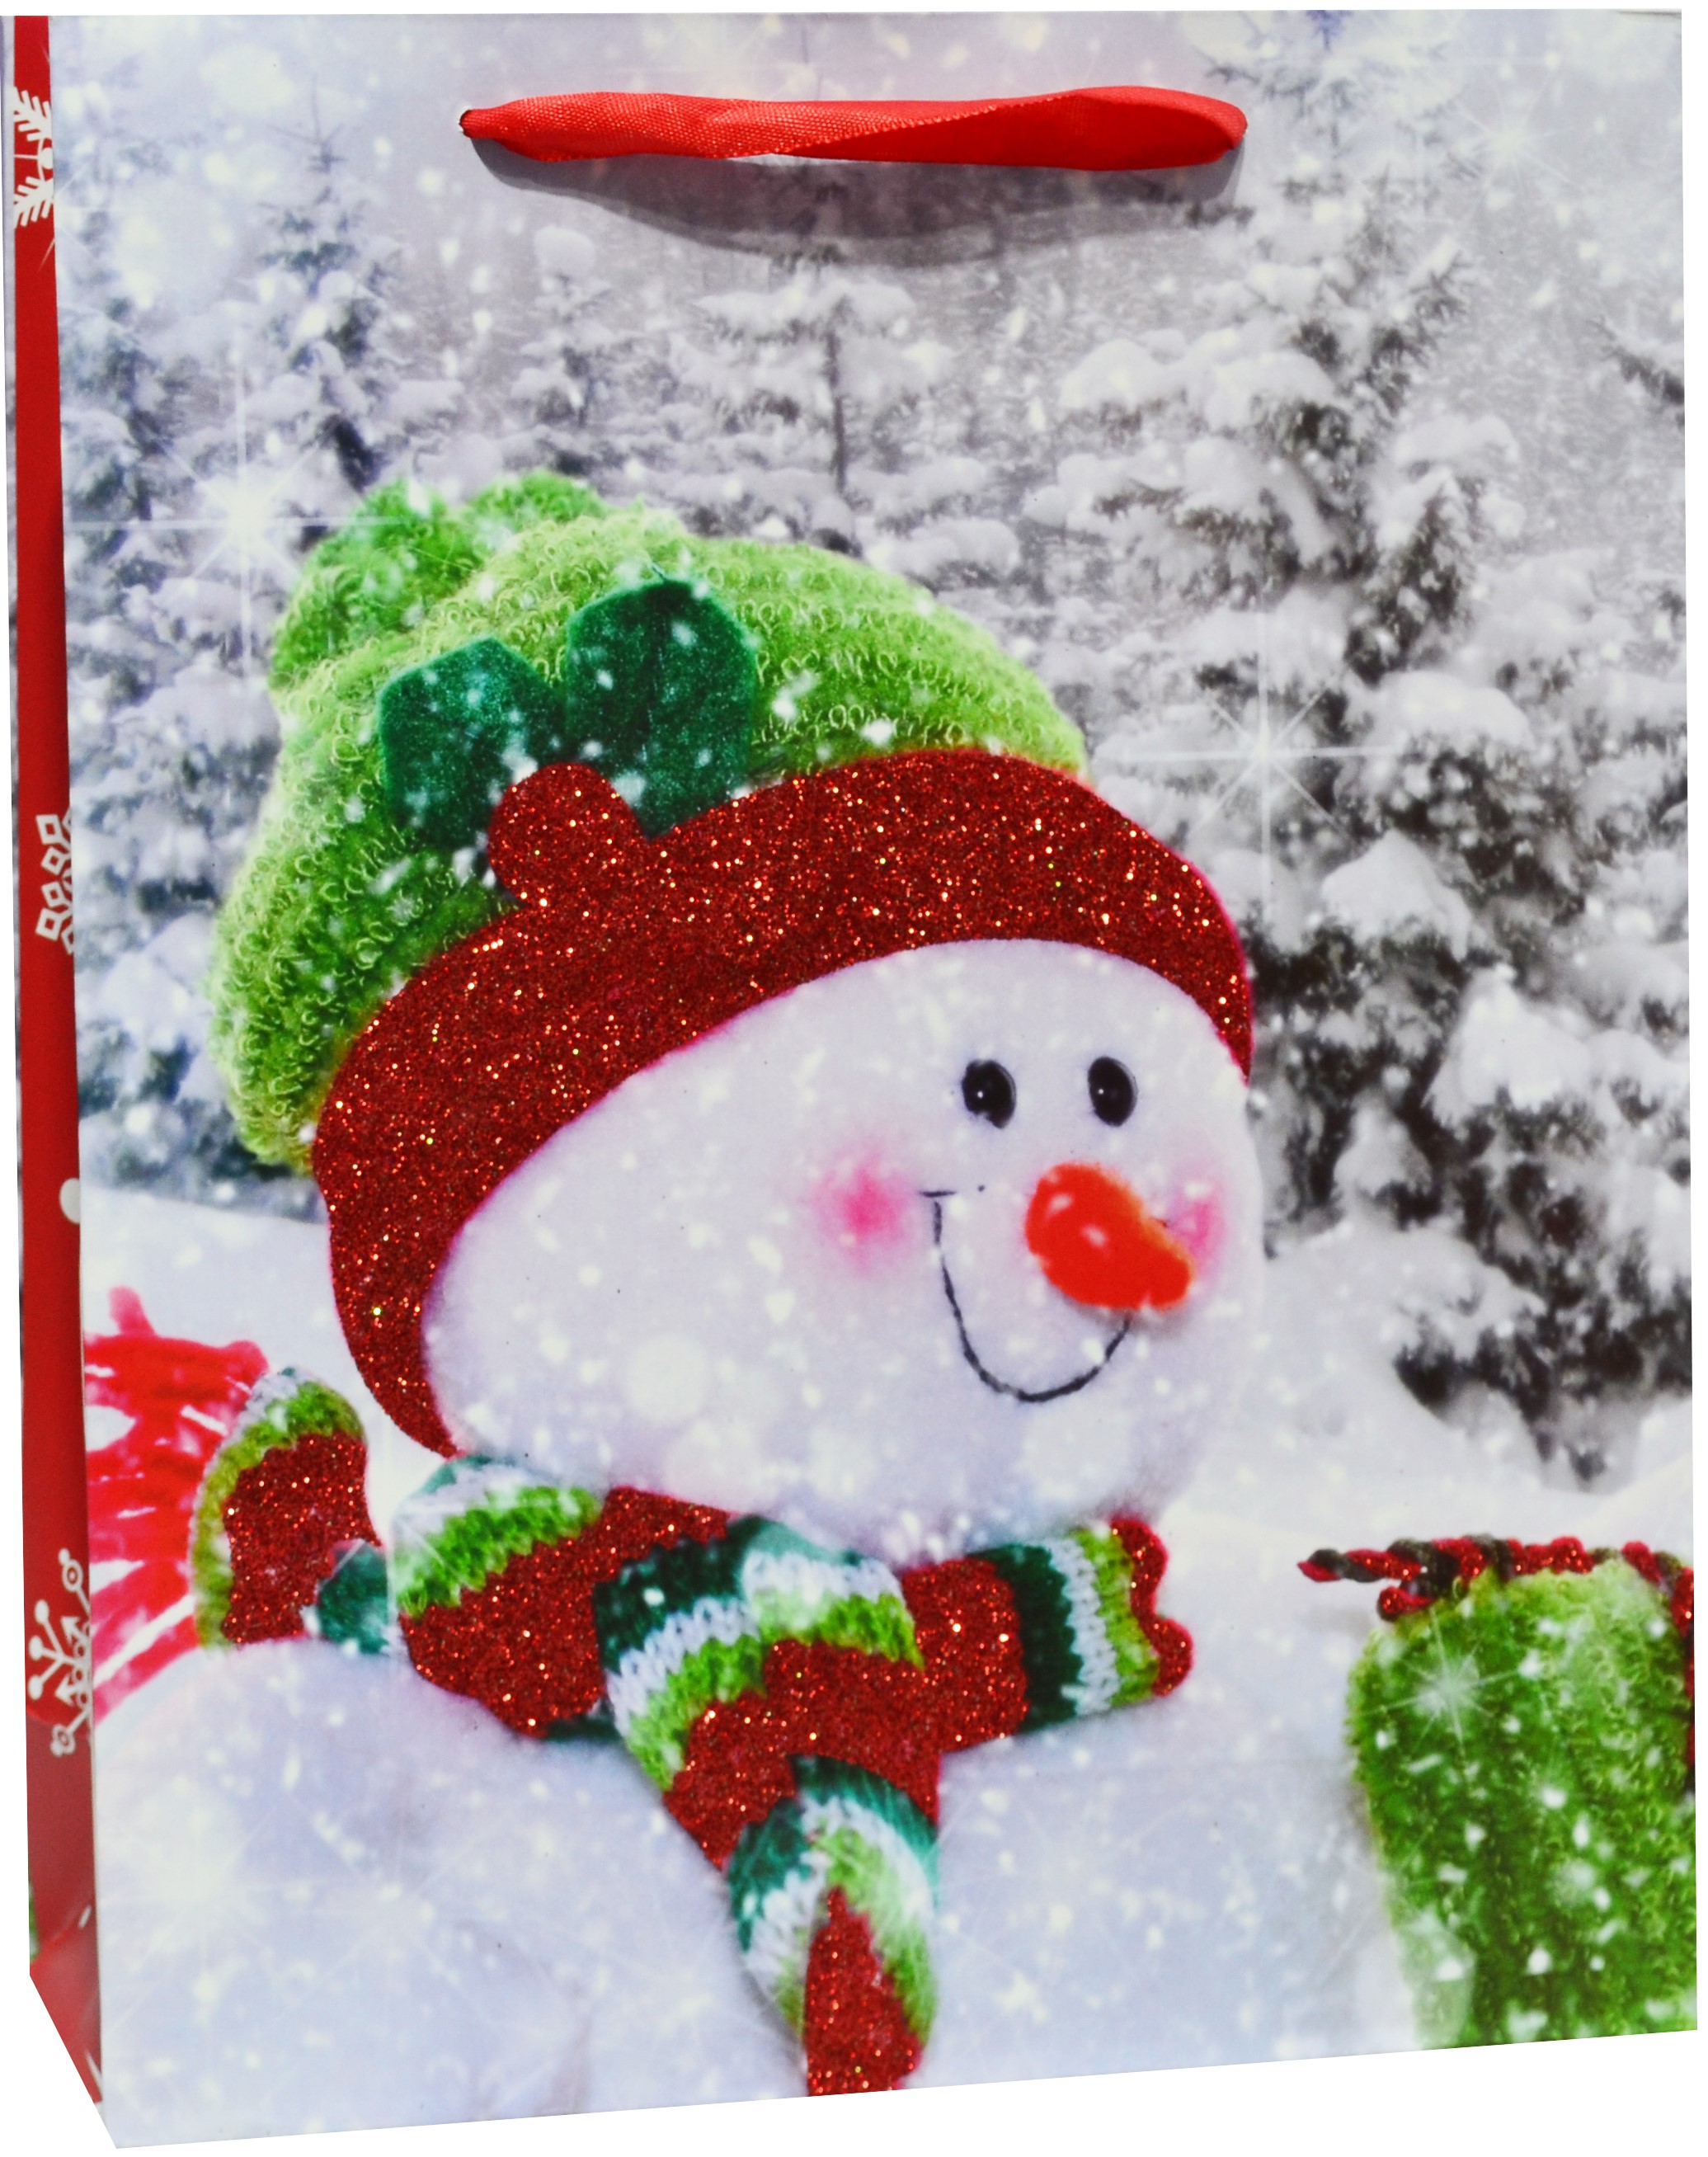 Пакет подарочный, Веселый снеговик, с блестками, 24*18*9 см, 1 шт.